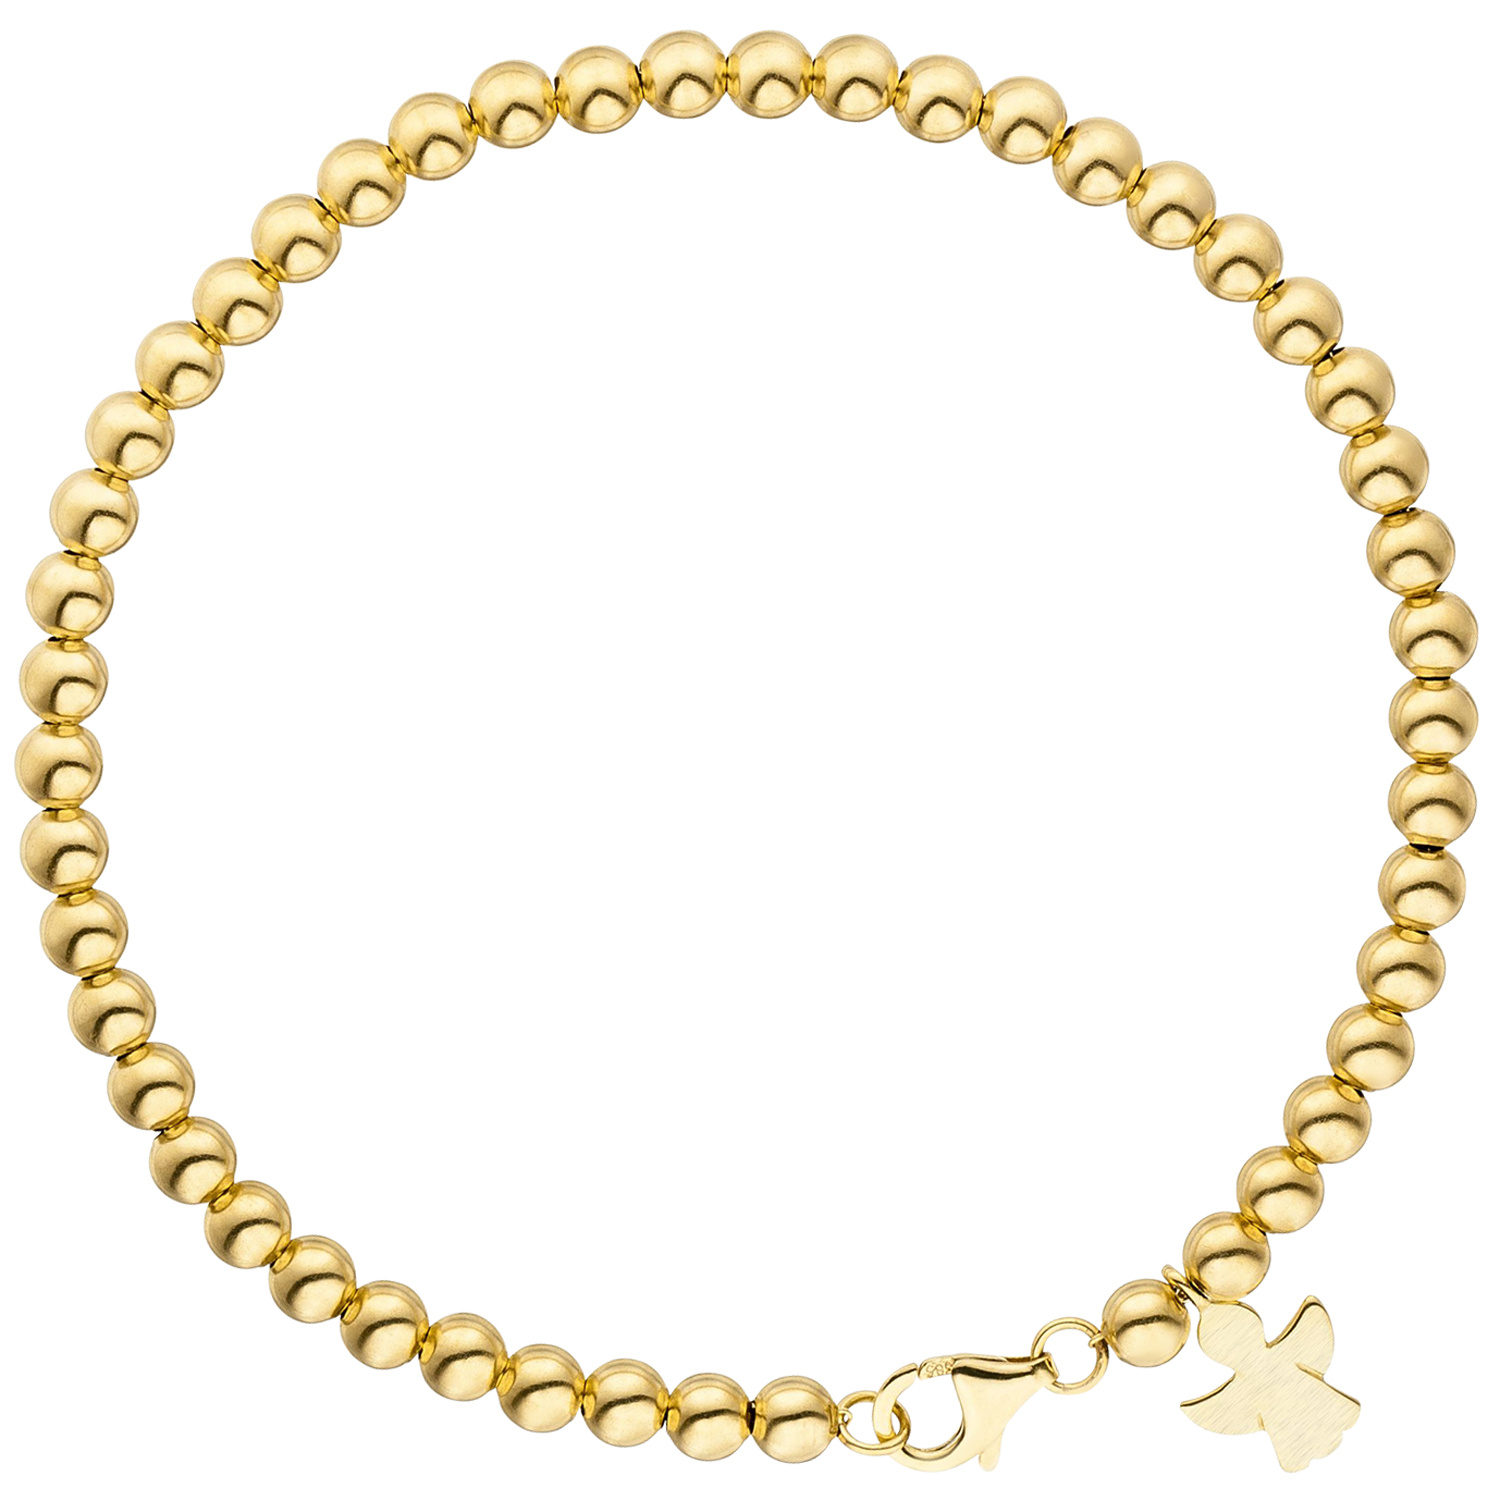 Identbändchen Armband Armkette mit Engel 585 Gelbgold 14cm Kinder Goldarmband 